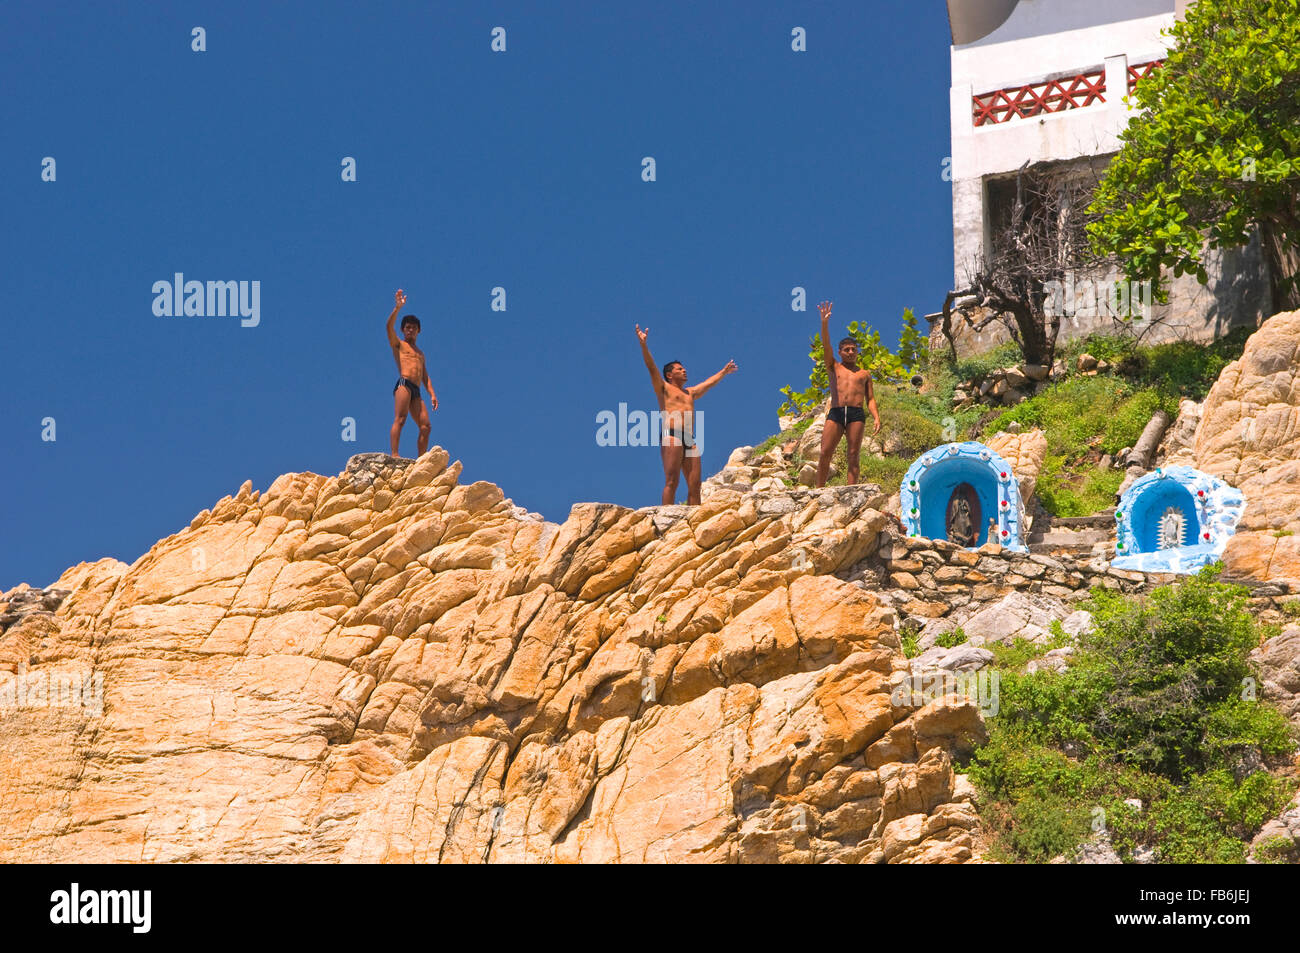 La célèbre falaise les plongeurs de la Quebrada à Acapulco, Mexique Banque D'Images